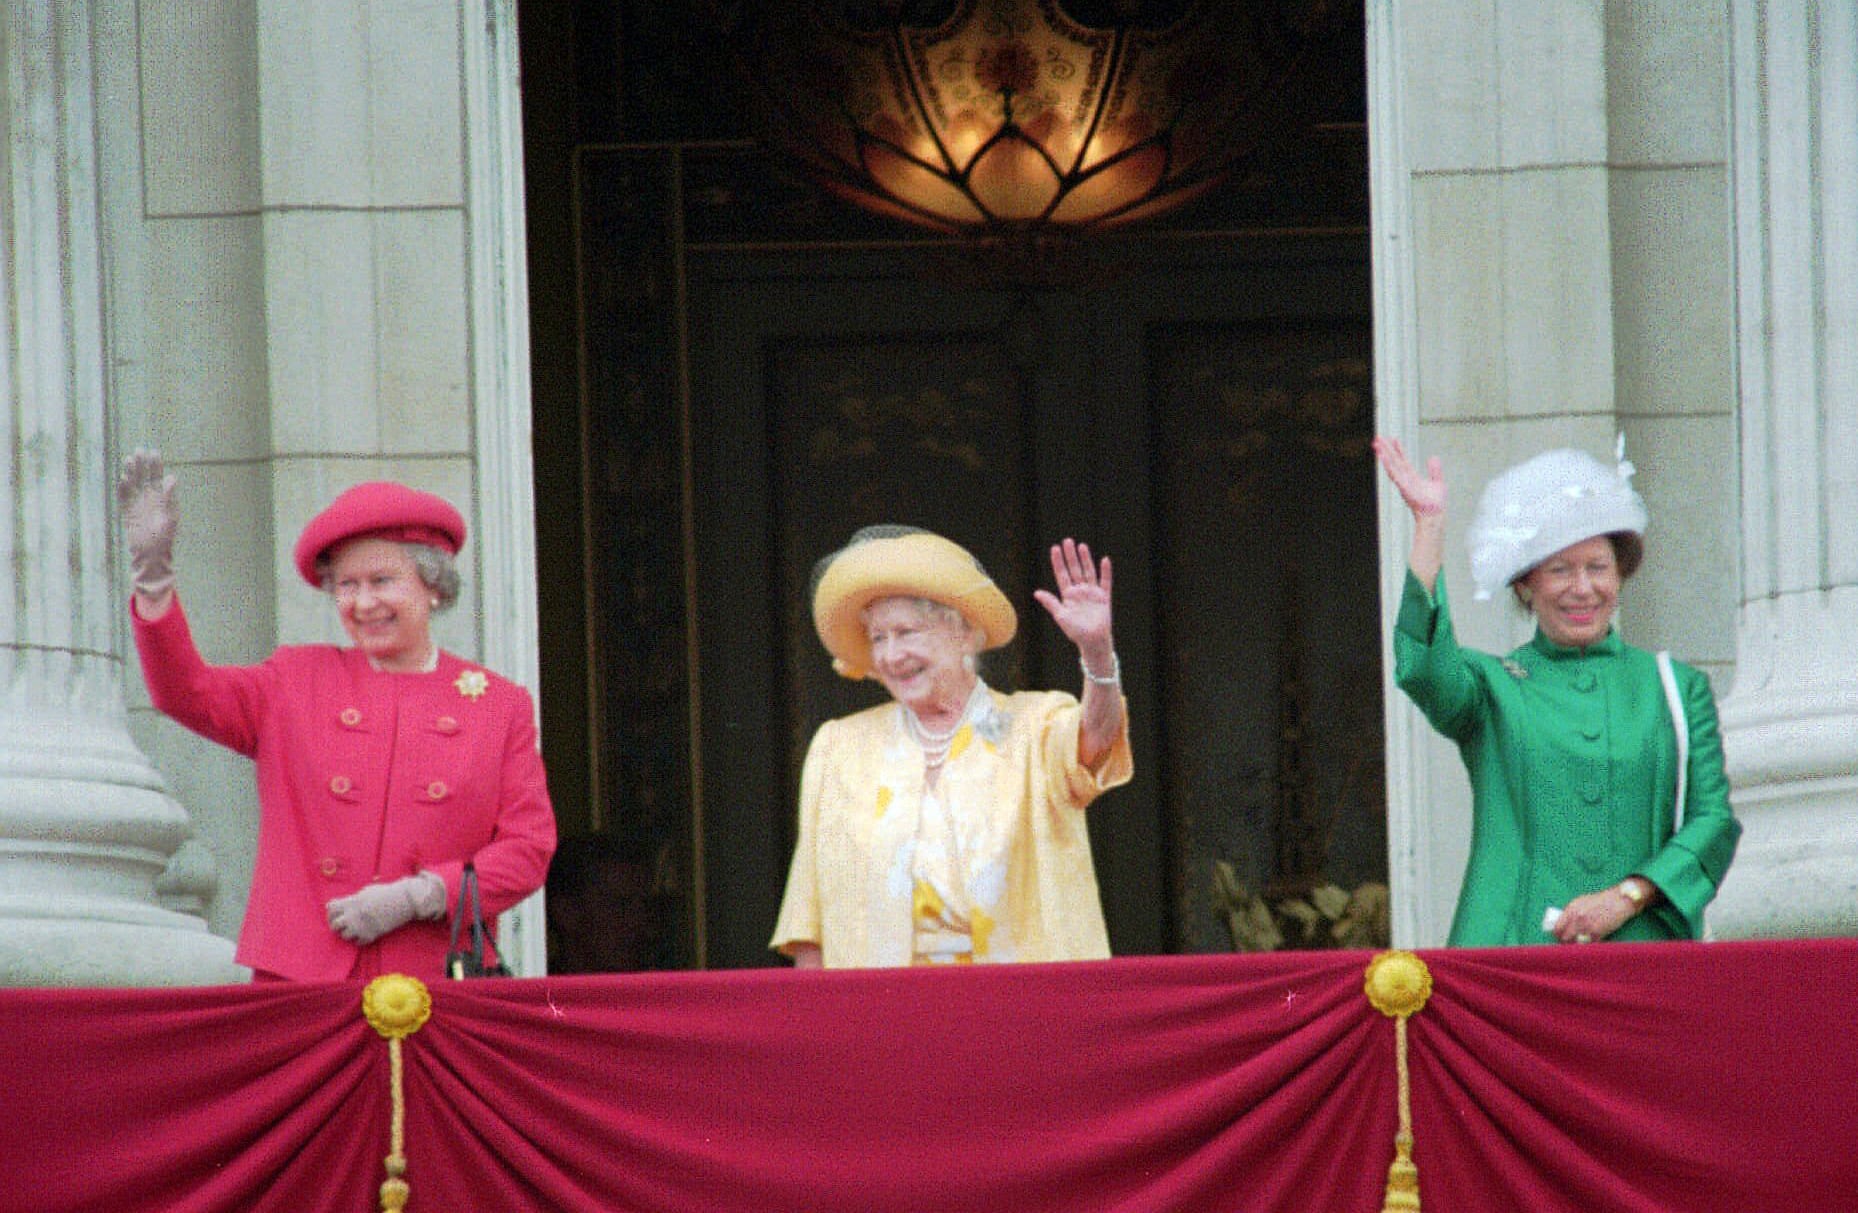 נשום משפחת המלוכה ב-1995 מנופפות לנתינים: הנסיכה מרגרט, המלכה אליזבת השנייה והמלכה האם, מאי 1995 (צילום: AP Photo/Max Nash)